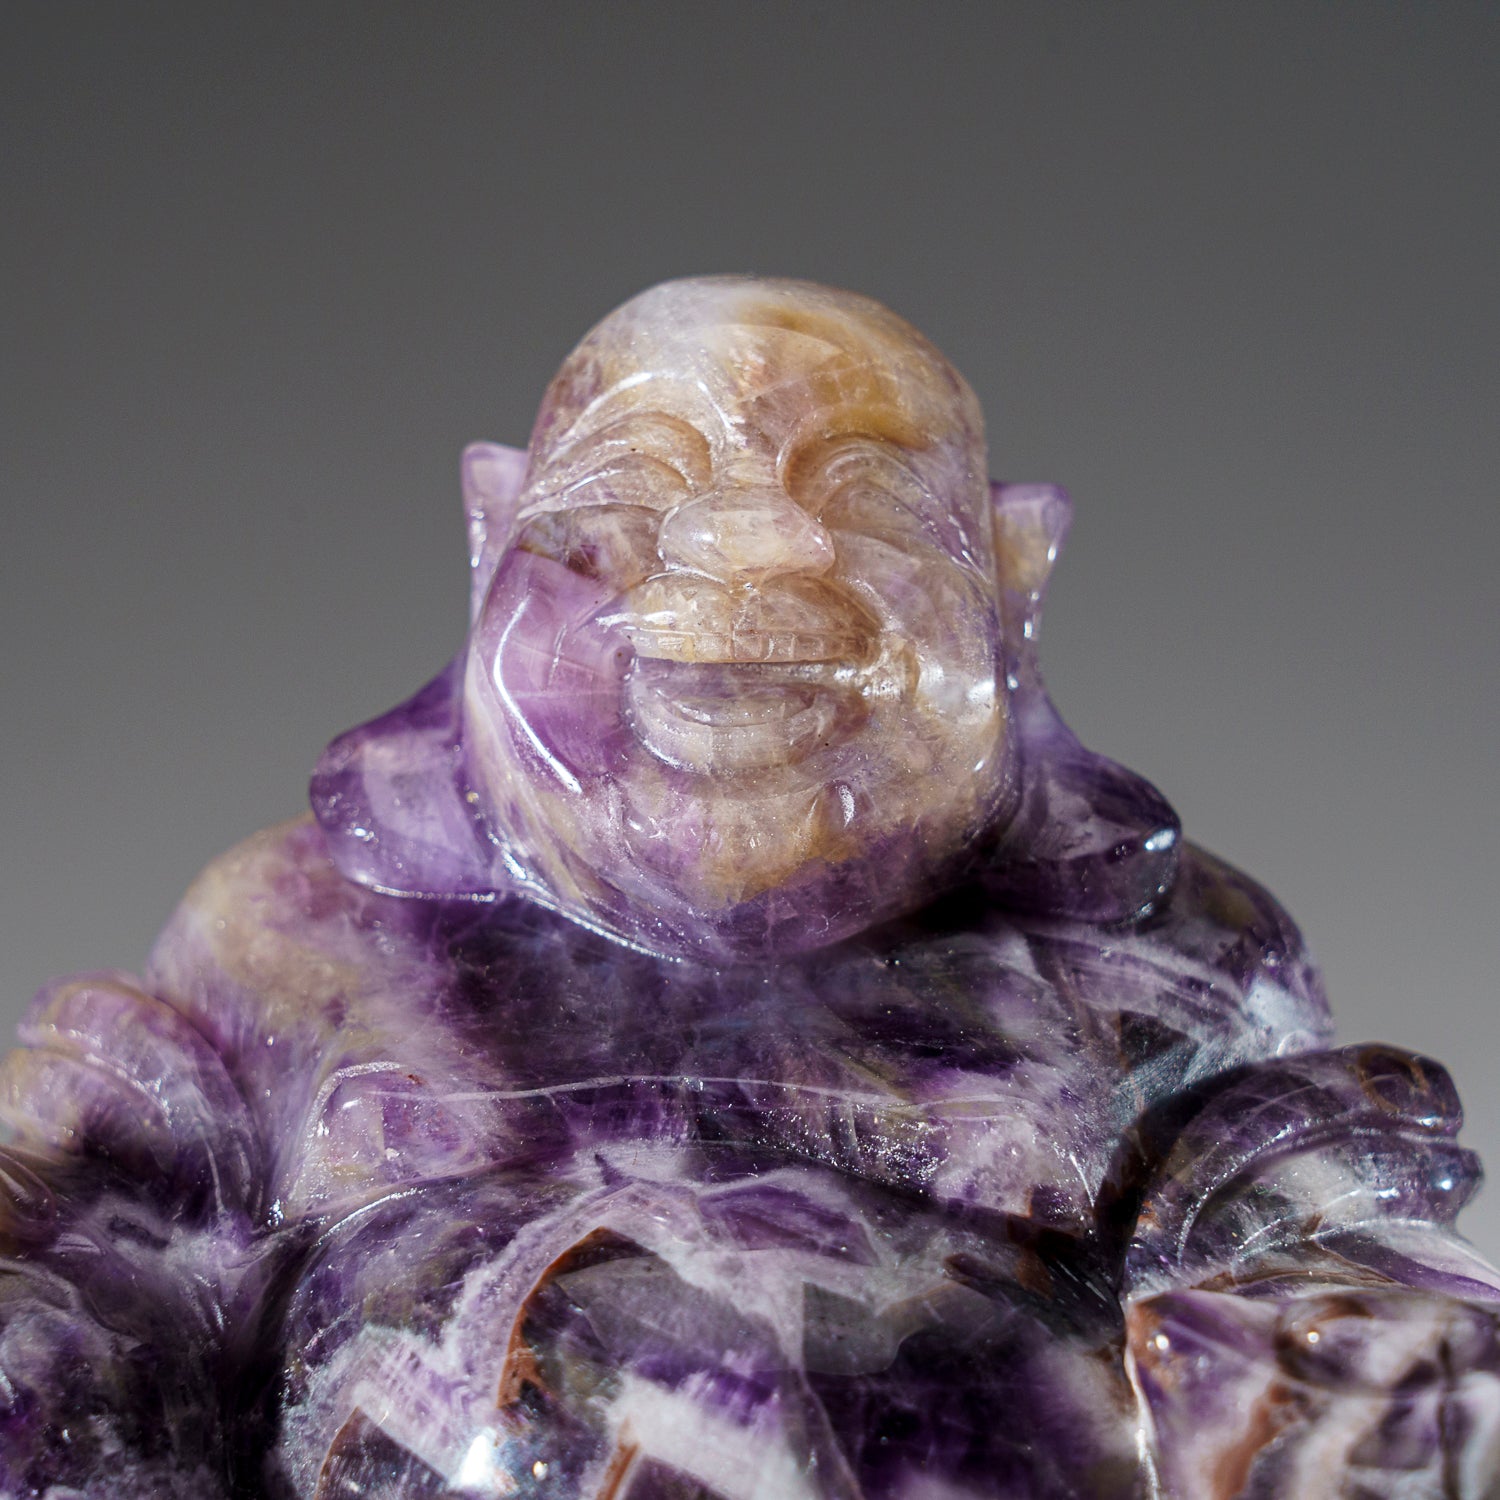 Genuine Polished Chevron Amethyst Buddha Carving (1.6 lbs)